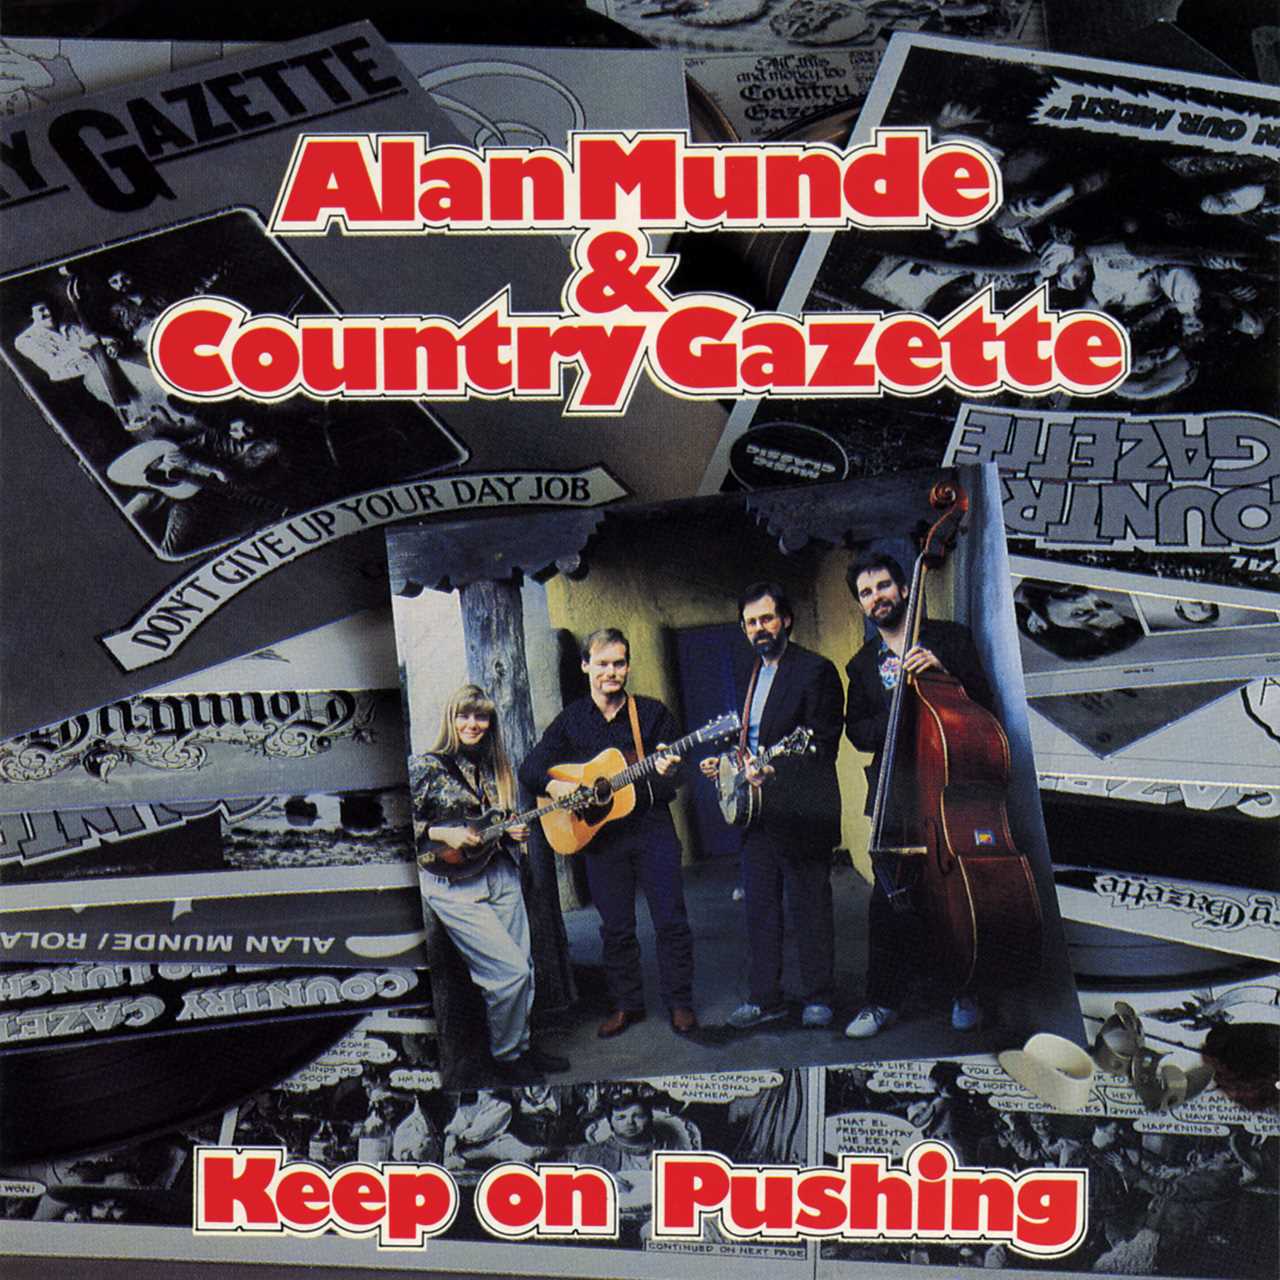 Alan Munde & Country Gazette - Keep On Pushing cover album